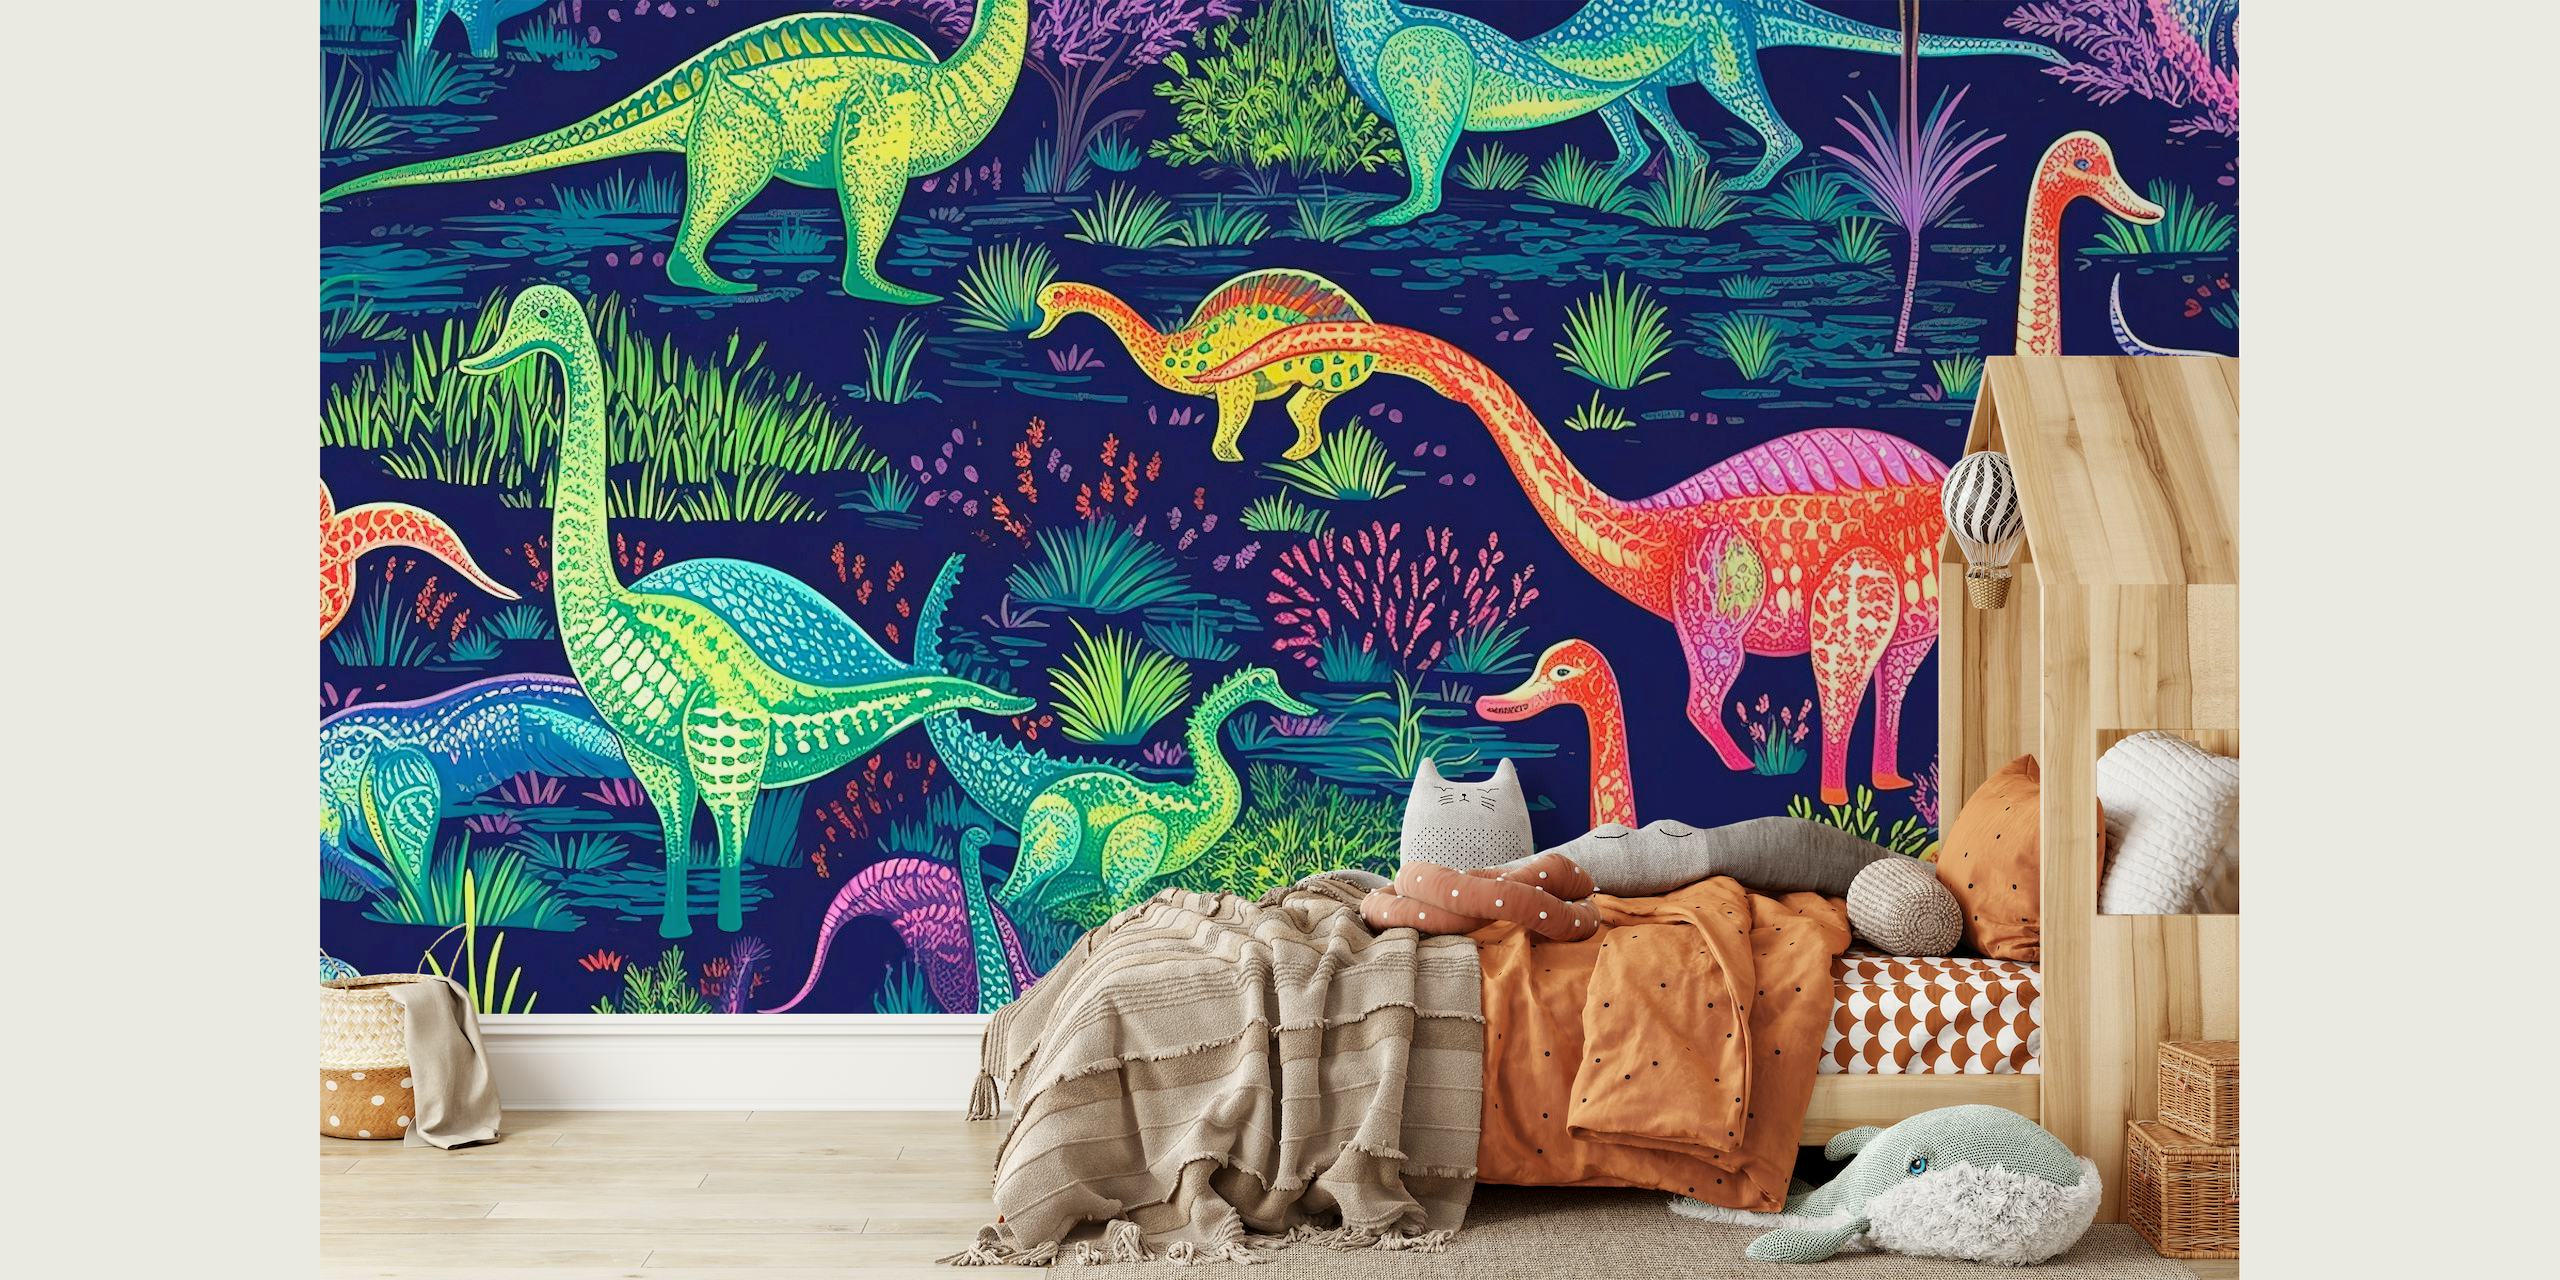 Farbenfrohes Wandbild mit animierten Dinosauriern in fluoreszierenden Farben vor einem prähistorischen Hintergrund